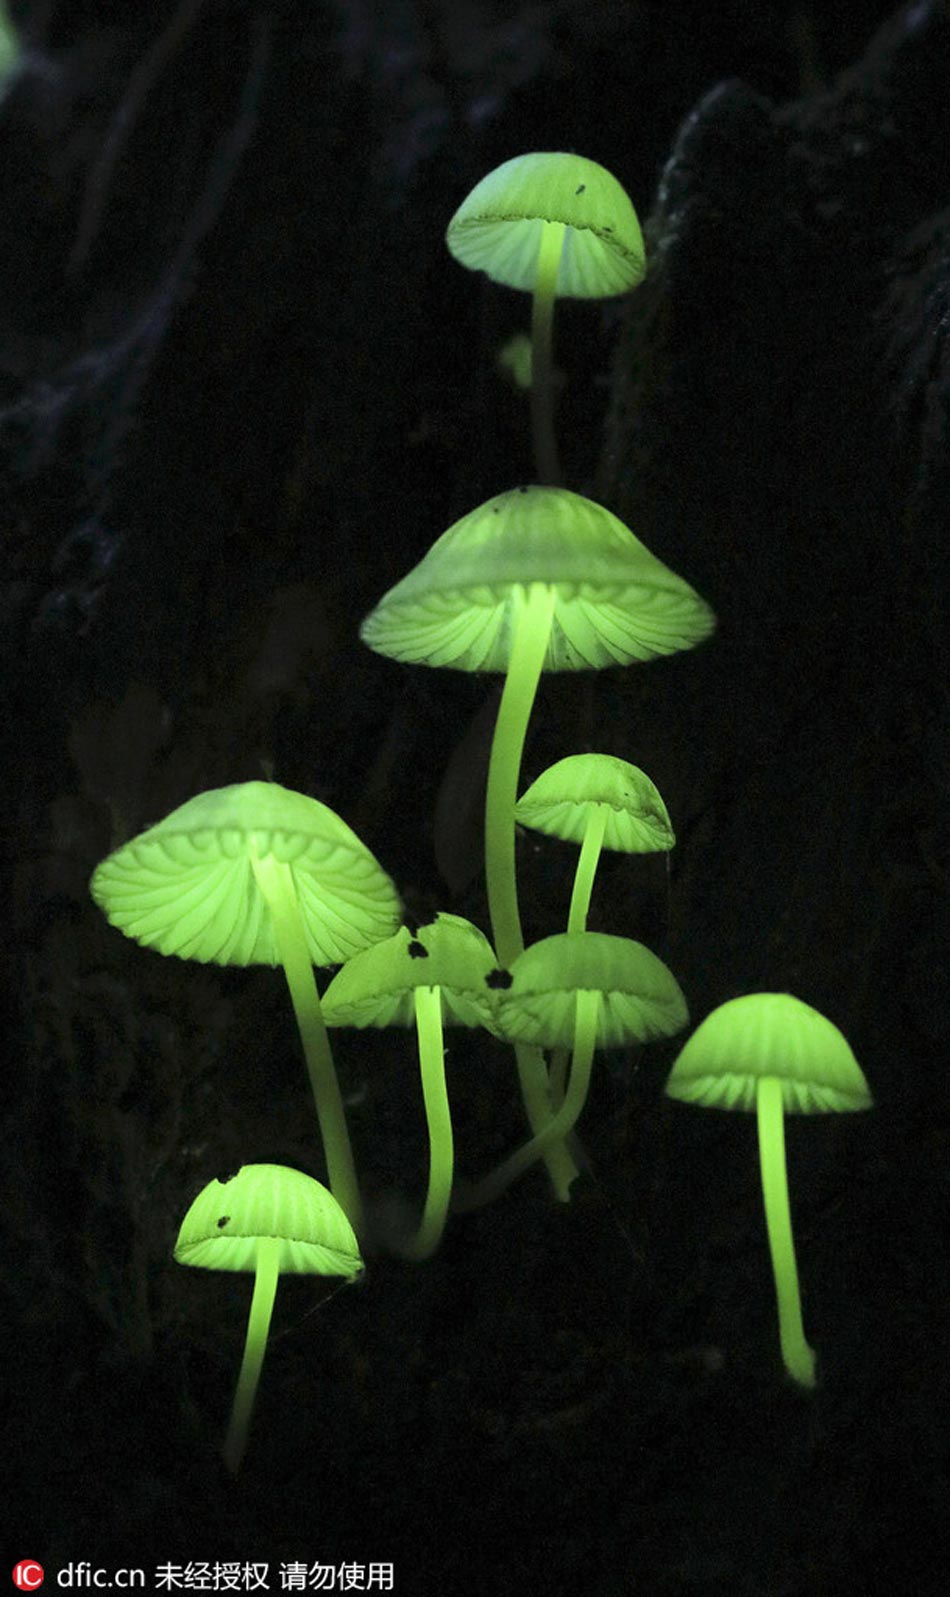 Luminous mushrooms in Japan